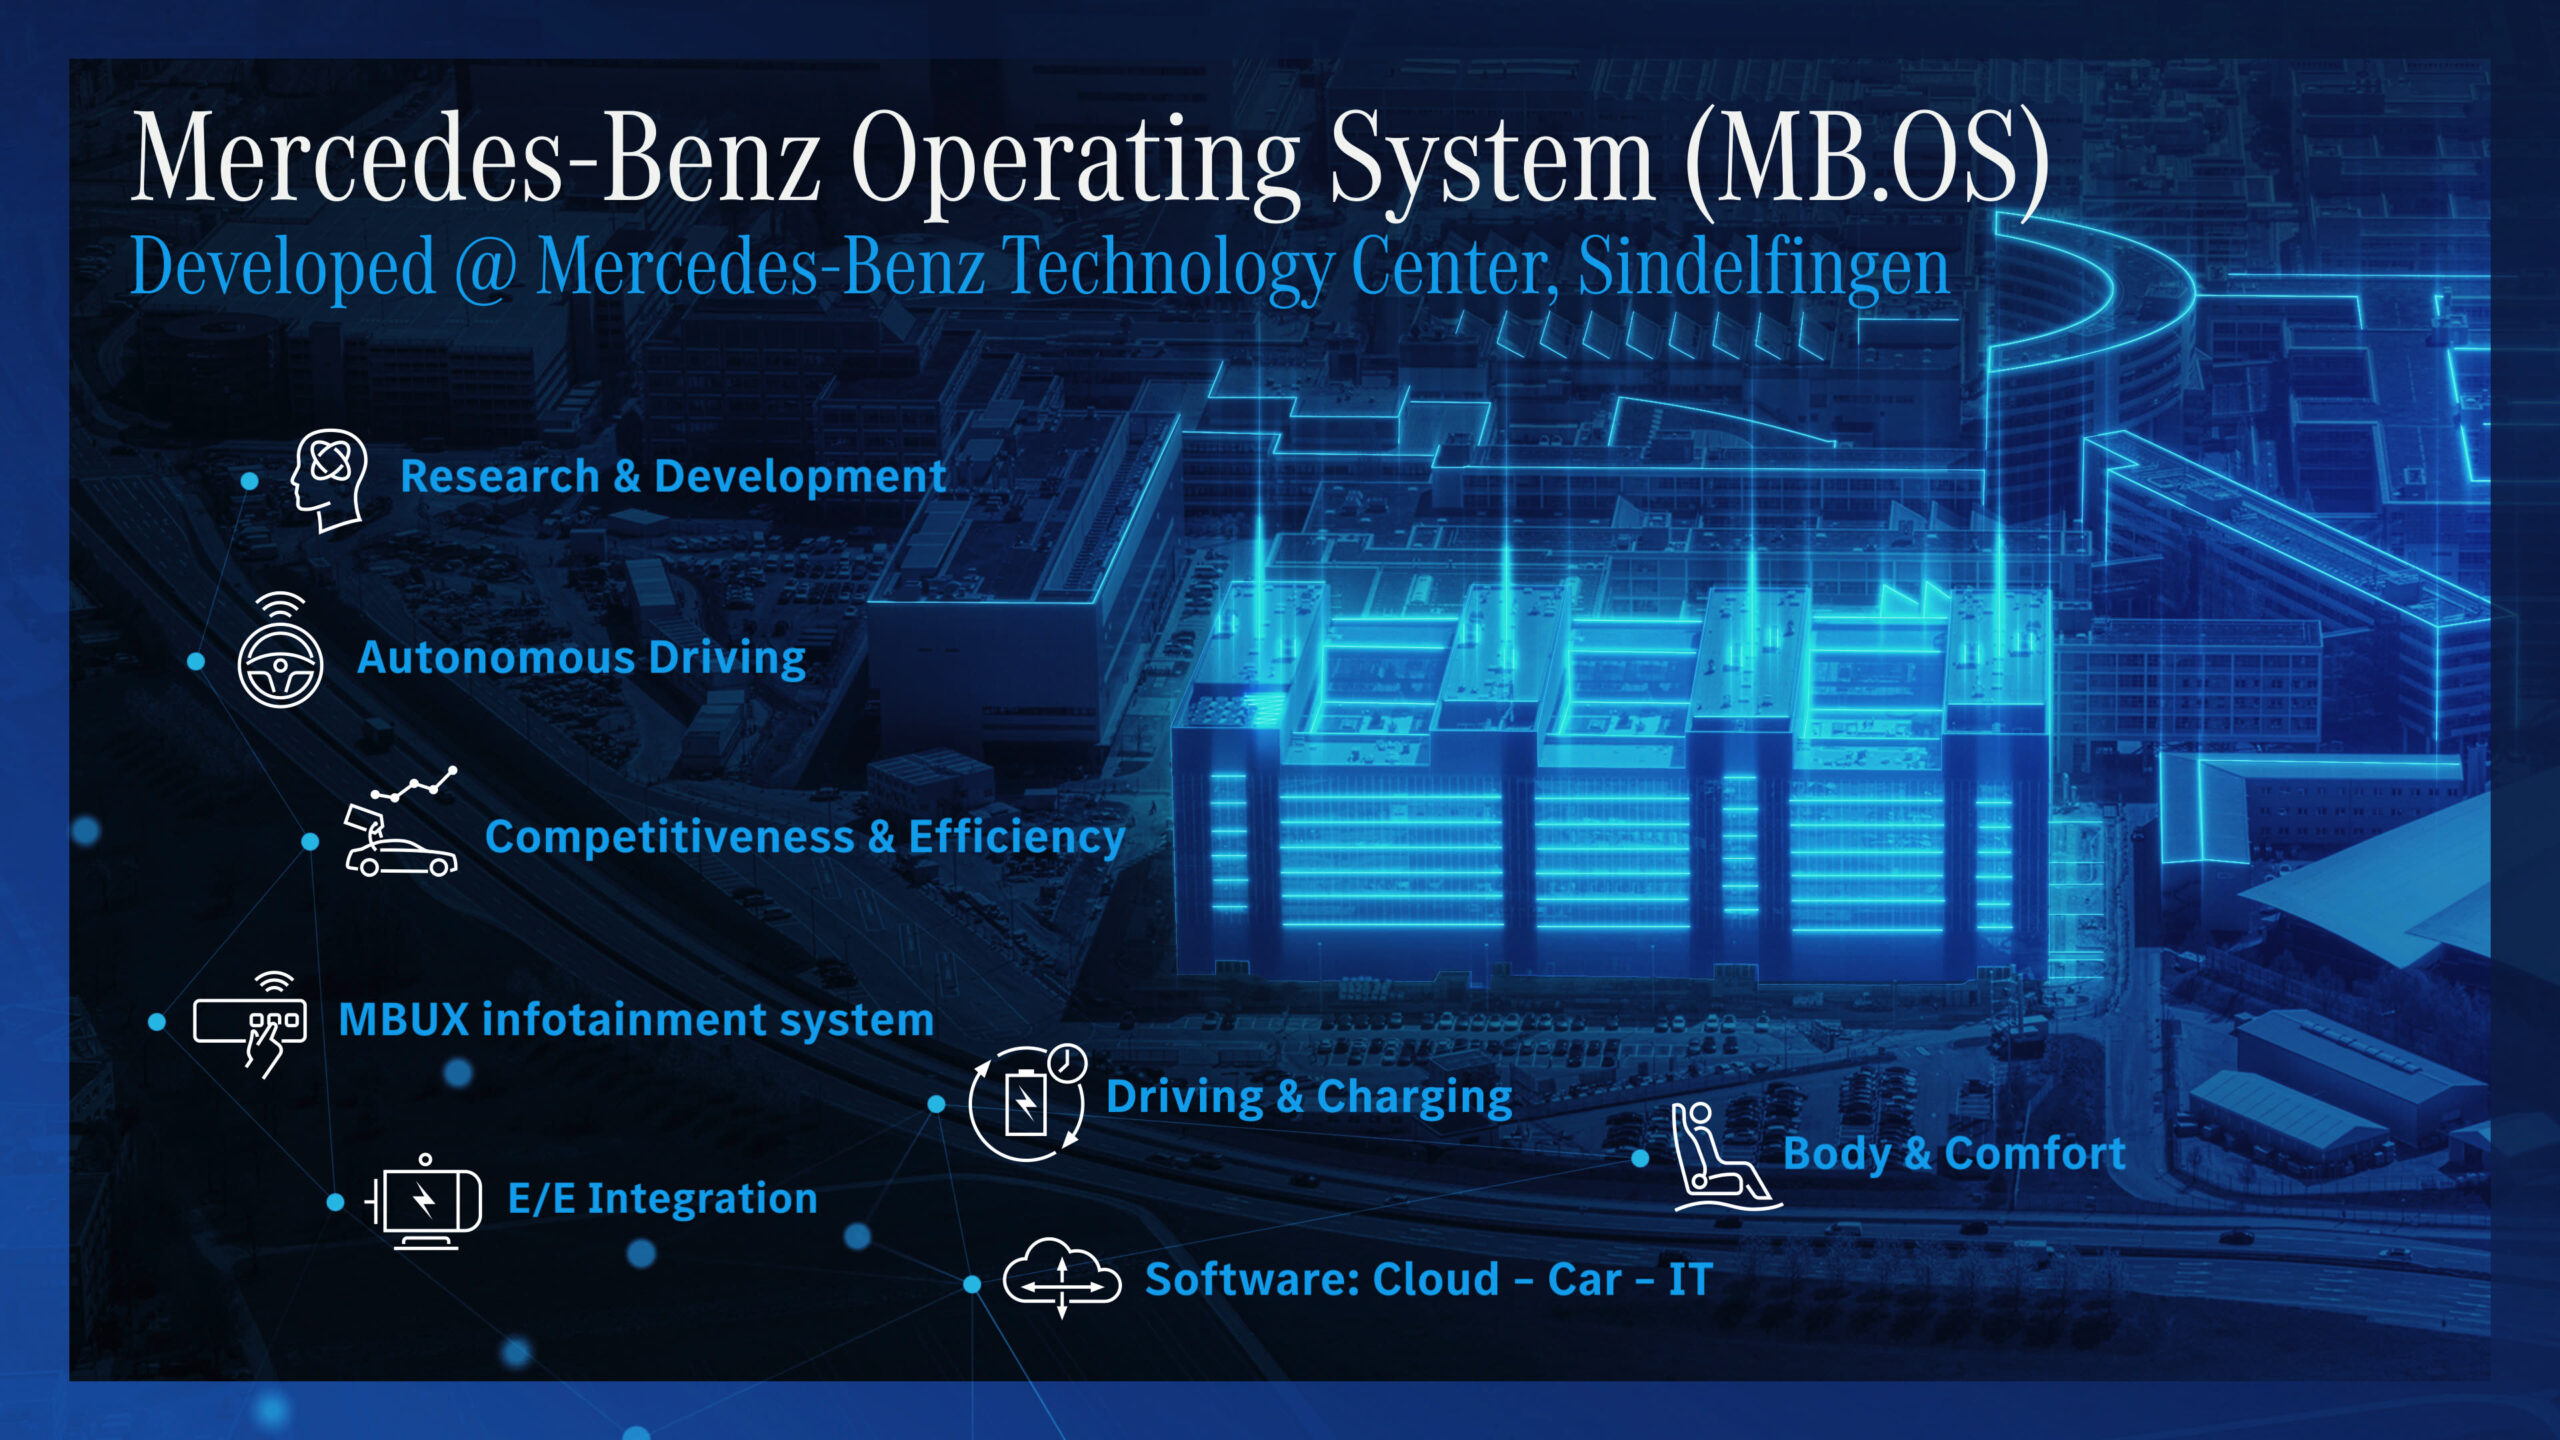 Mercedes-Benz vuole creare un suo sistema operativo